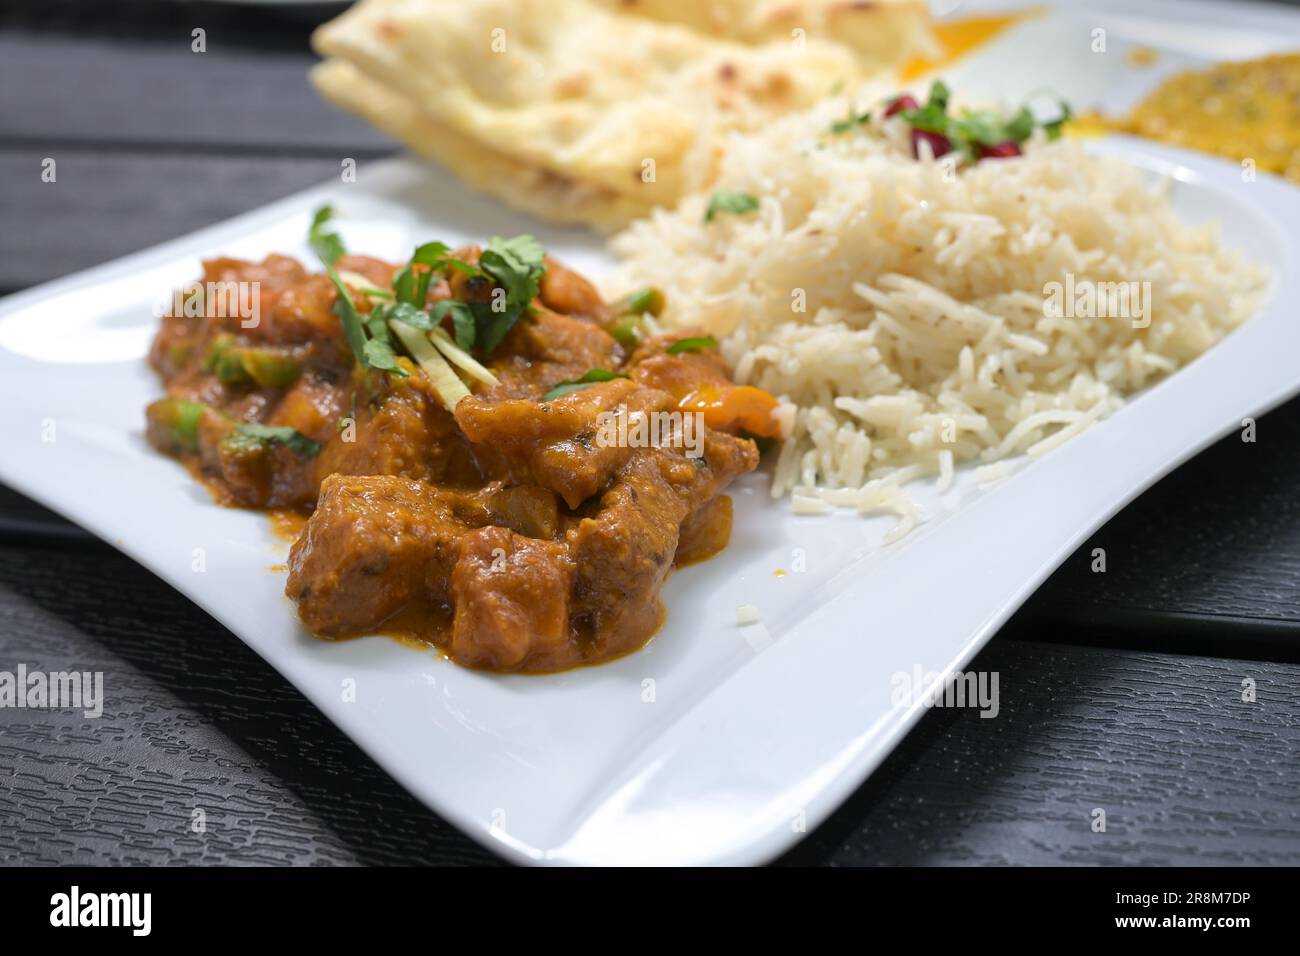 Repas indien, bœuf aux légumes dans une sauce épicée, riz et pain sur une assiette blanche et une table noire, foyer choisi, profondeur de champ étroite Banque D'Images